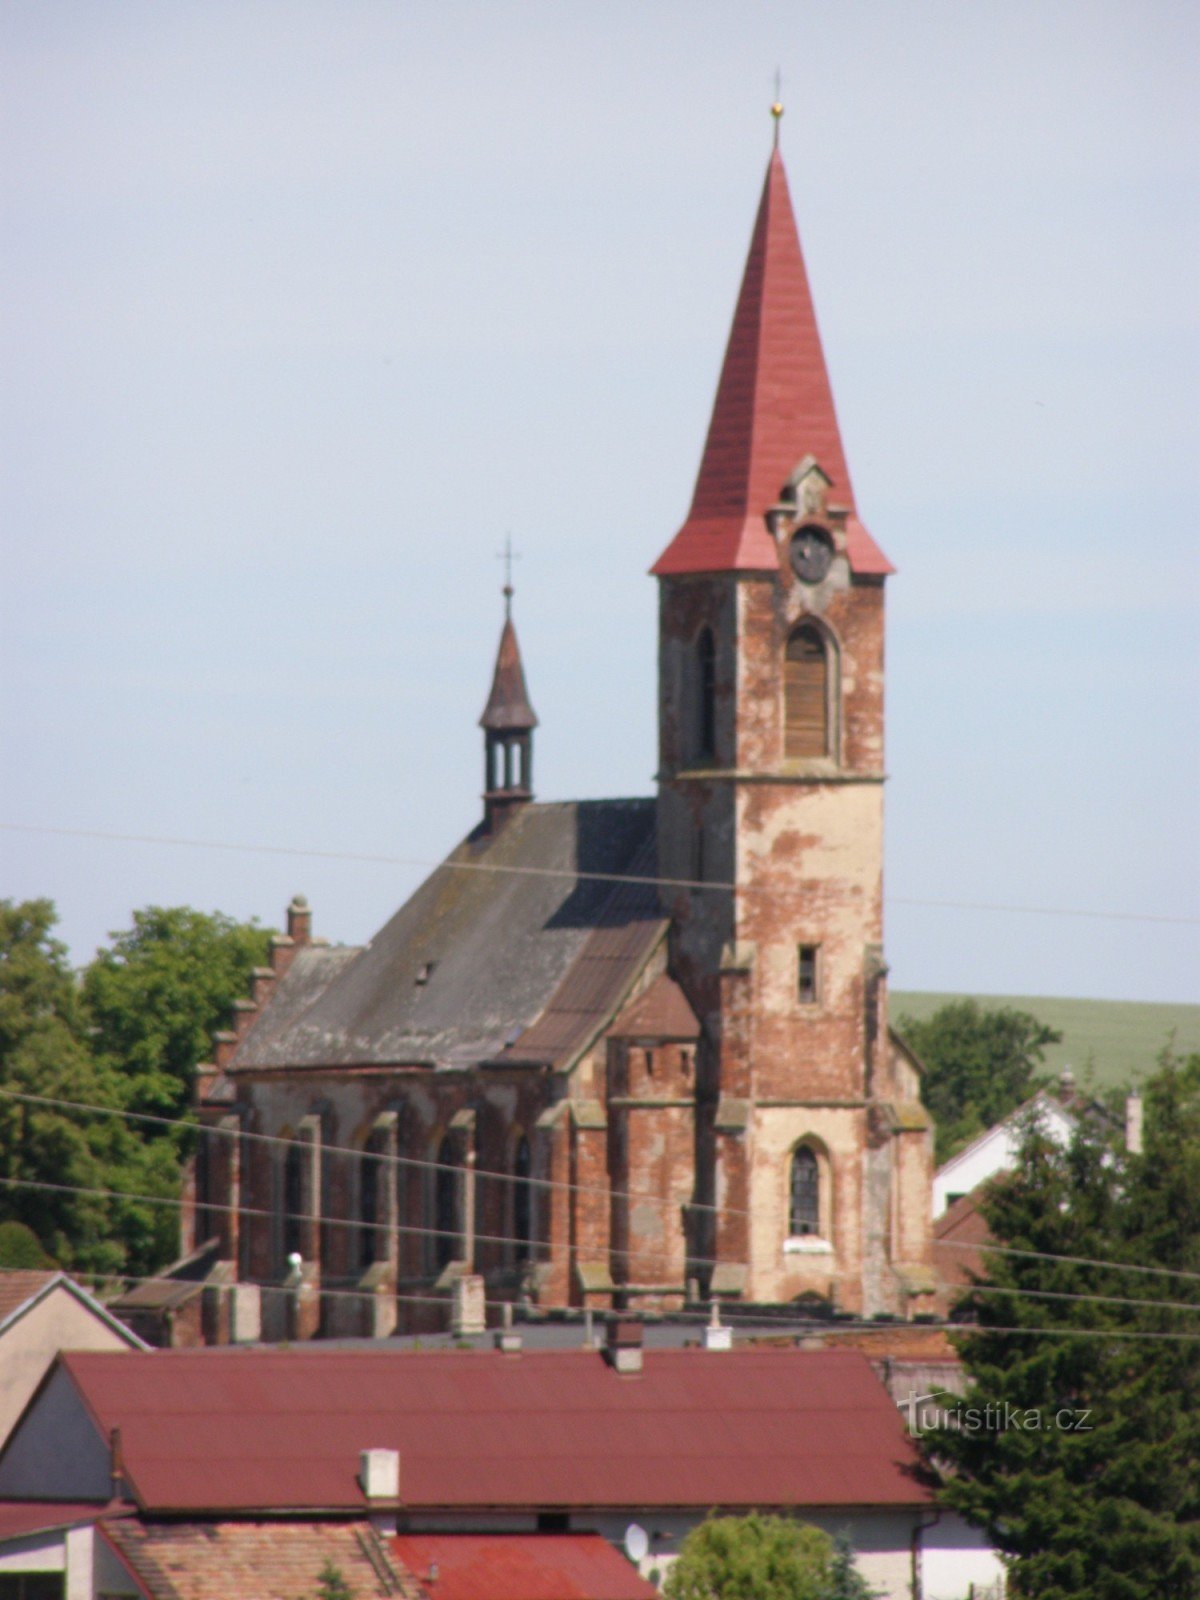 Suchá - Biserica Sfintei Treimi